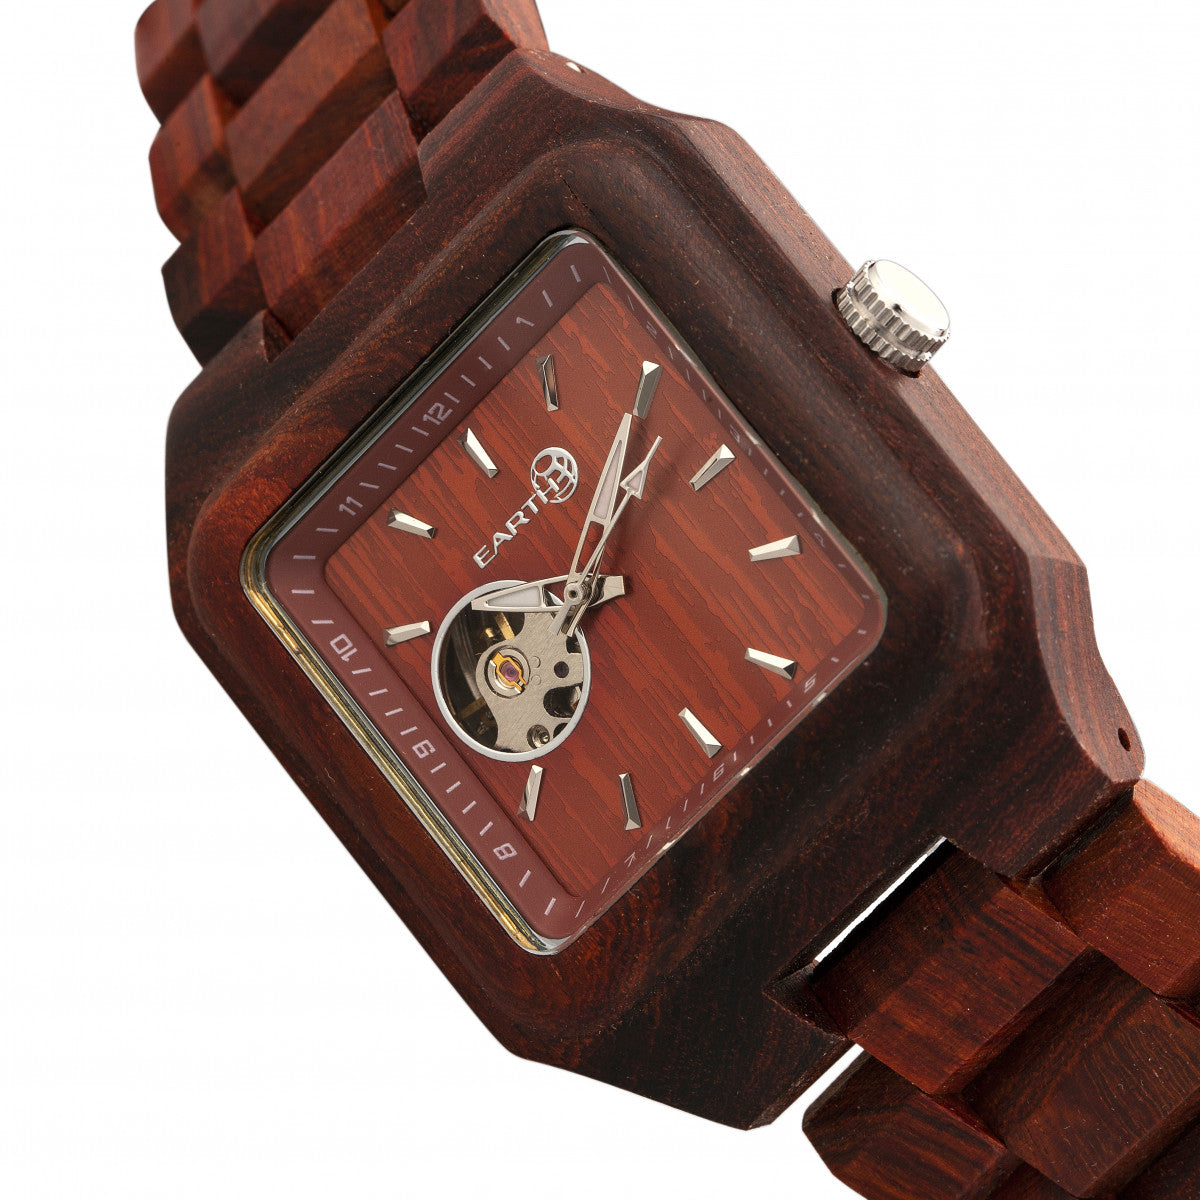 Earth Wood Black Rock Automatic Bracelet Watch - Red - ETHEW4403